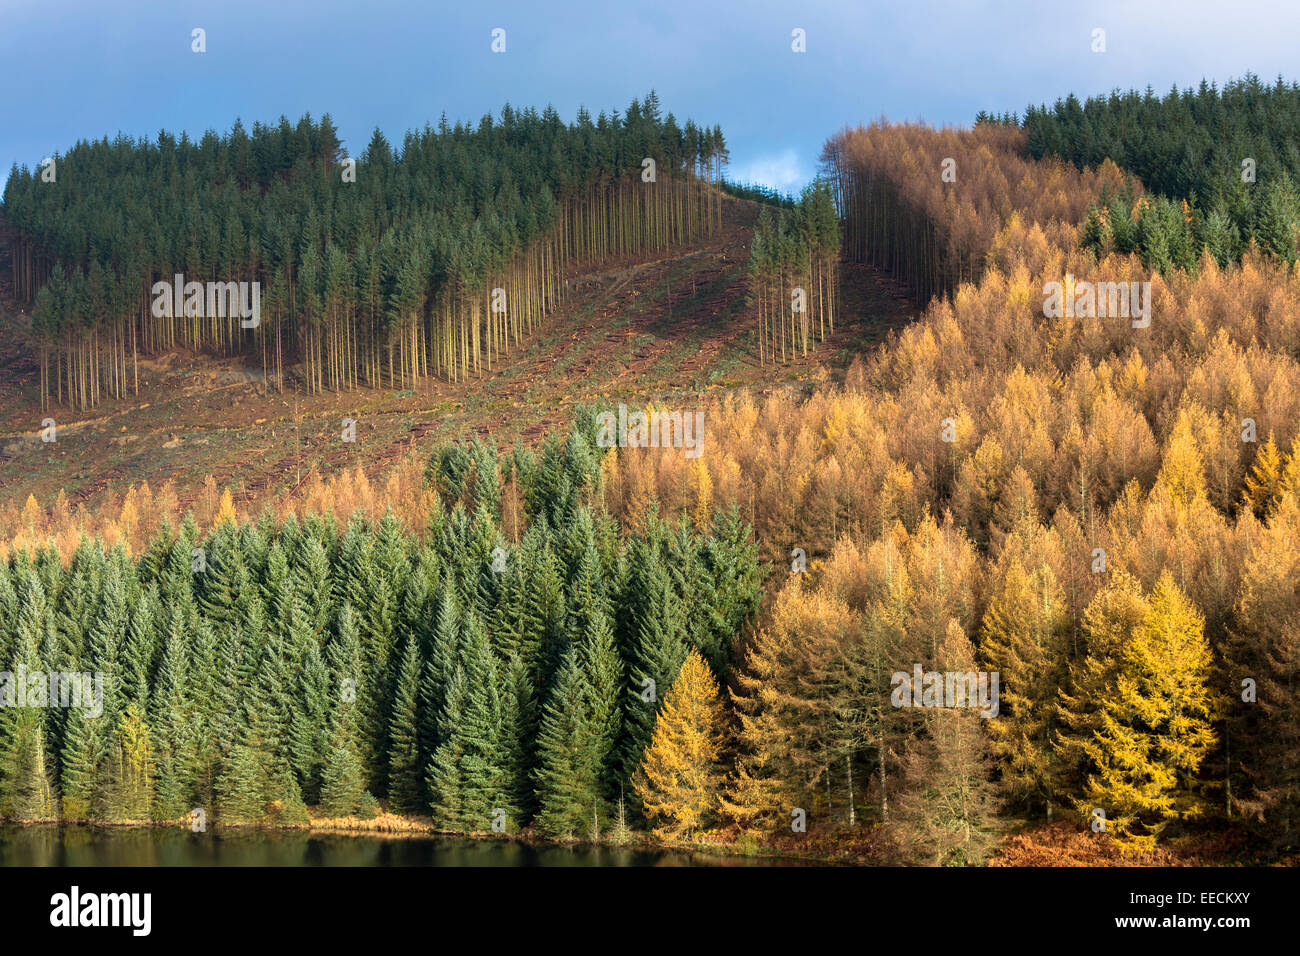 Grands mélèzes d'Europe, Larix decidua, dans la couleur de l'automne dans les forêts de conifères cultivés pour la production de bois de plantation forestière Banque D'Images